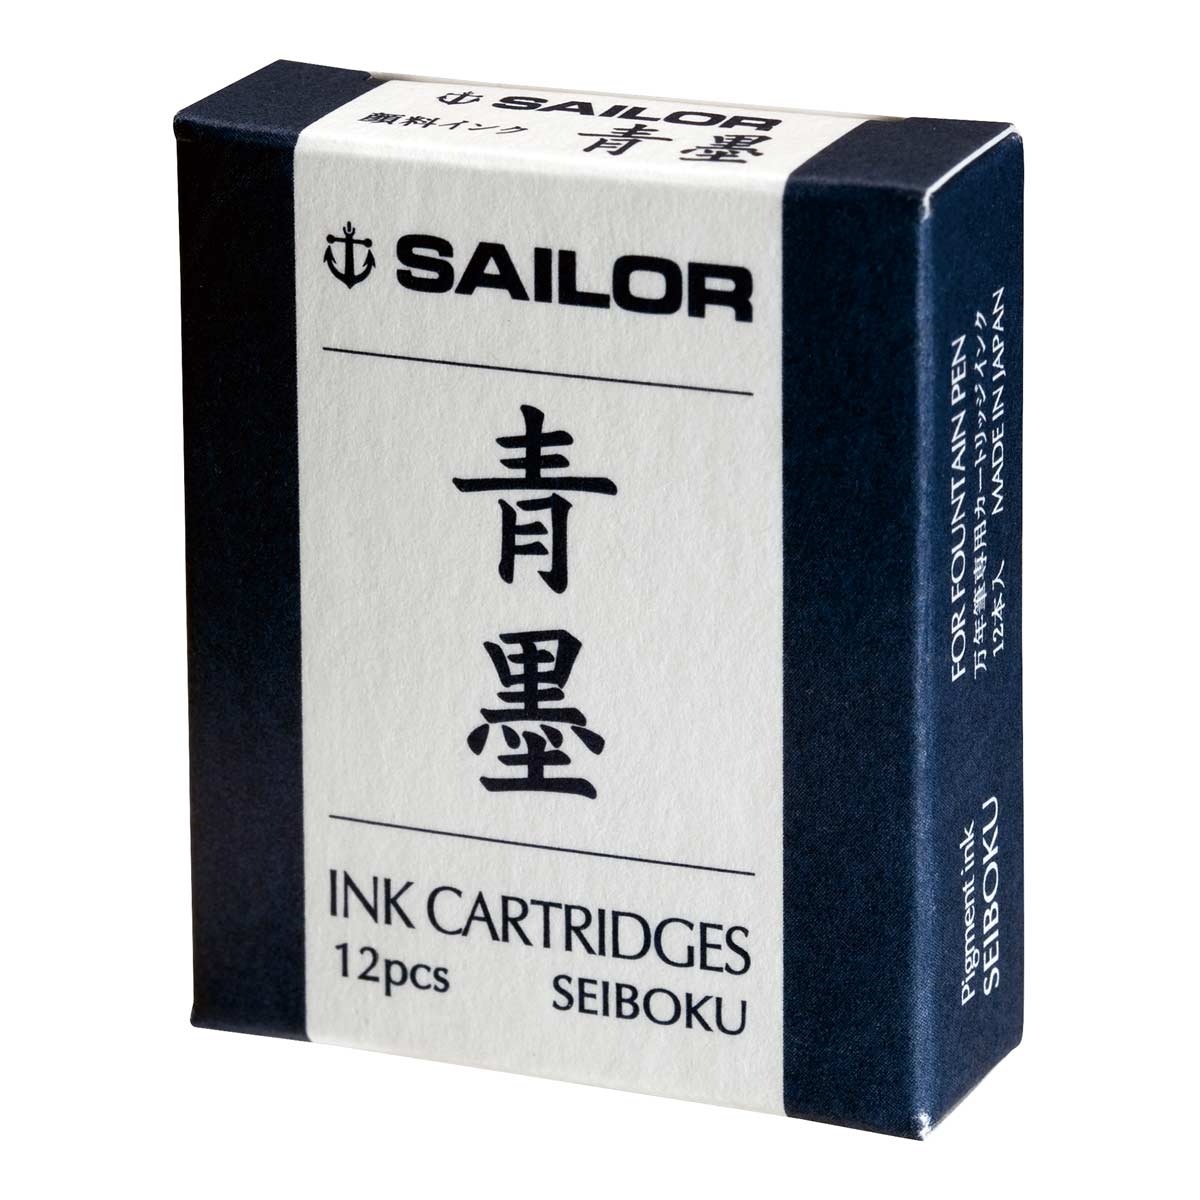 Sailor Patronen - Seiboku, 12 Stück